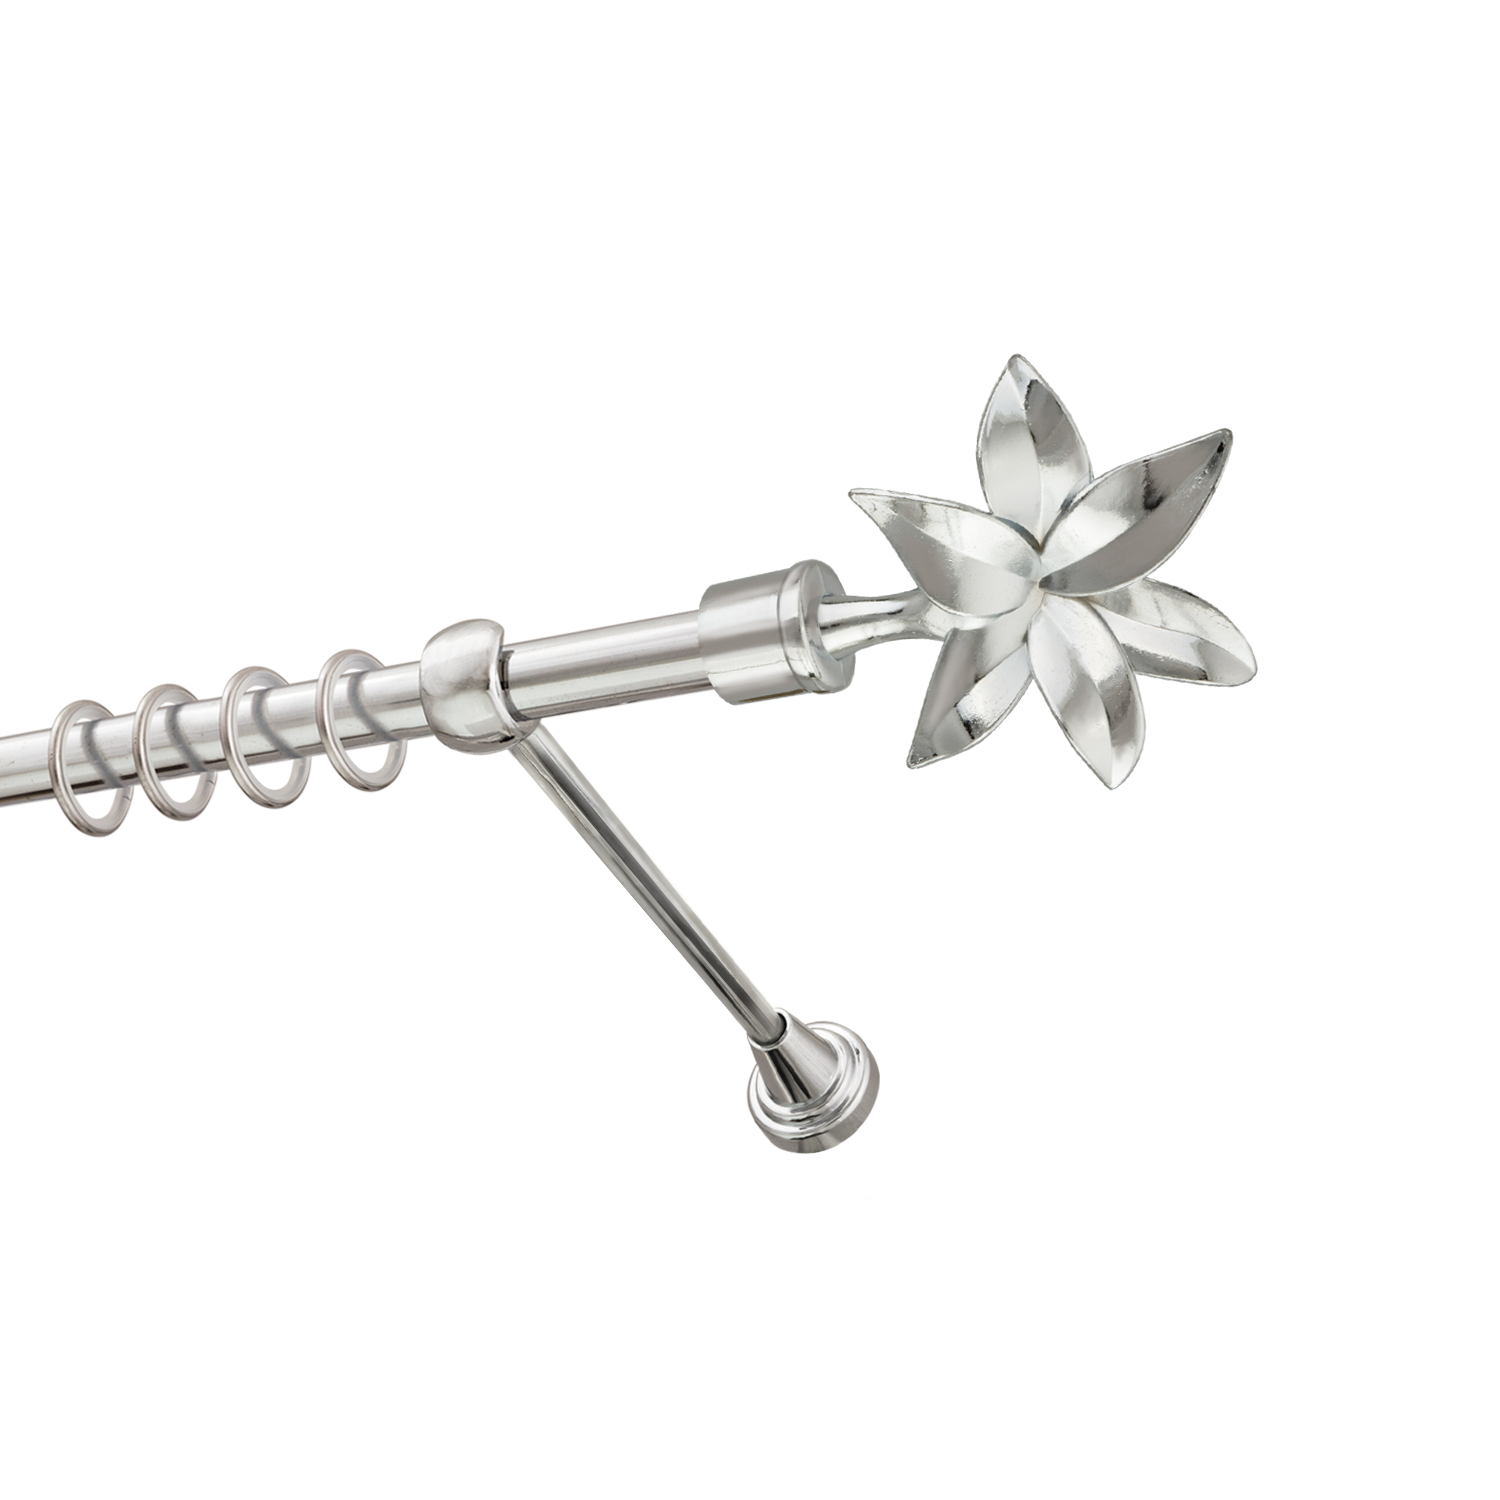 Металлический карниз для штор Магнолия, однорядный 16 мм, серебро, гладкая штанга, длина 200 см - фото Wikidecor.ru